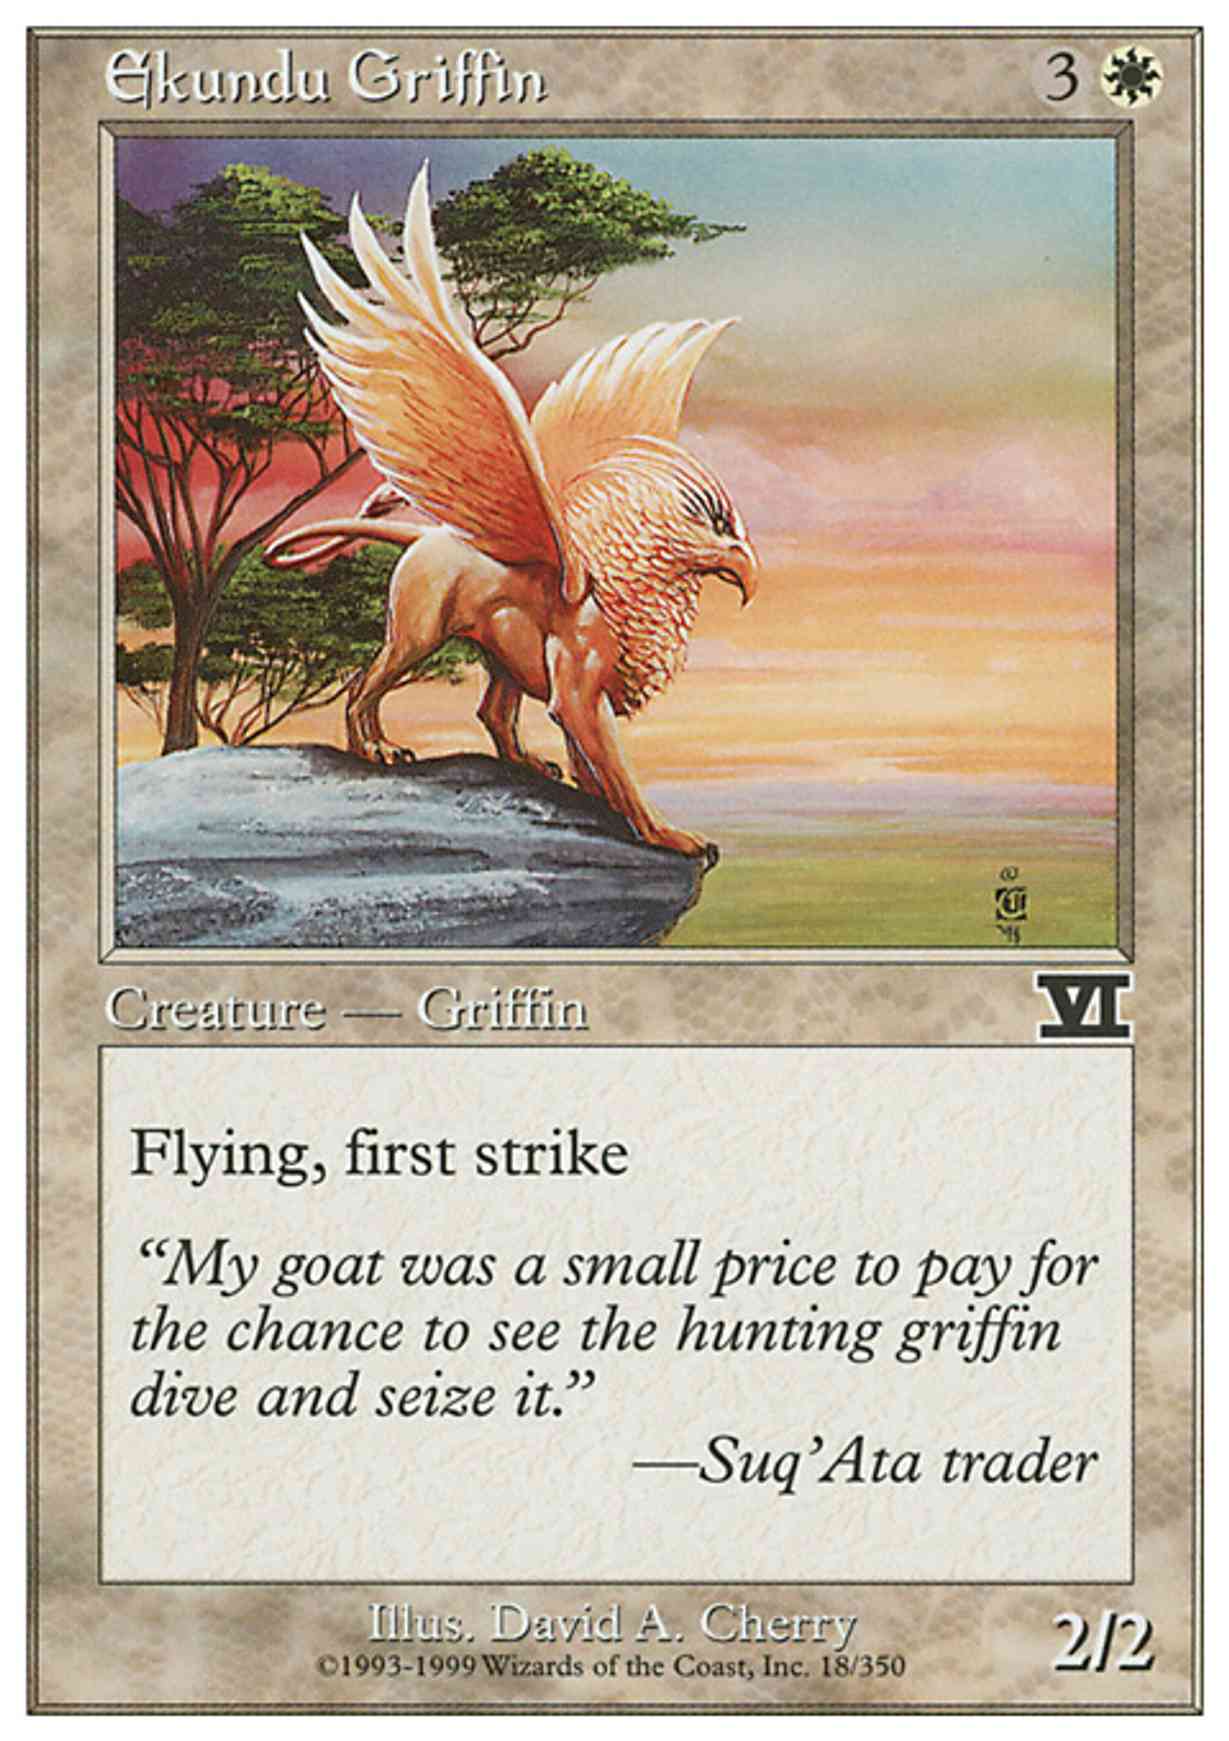 Ekundu Griffin magic card front